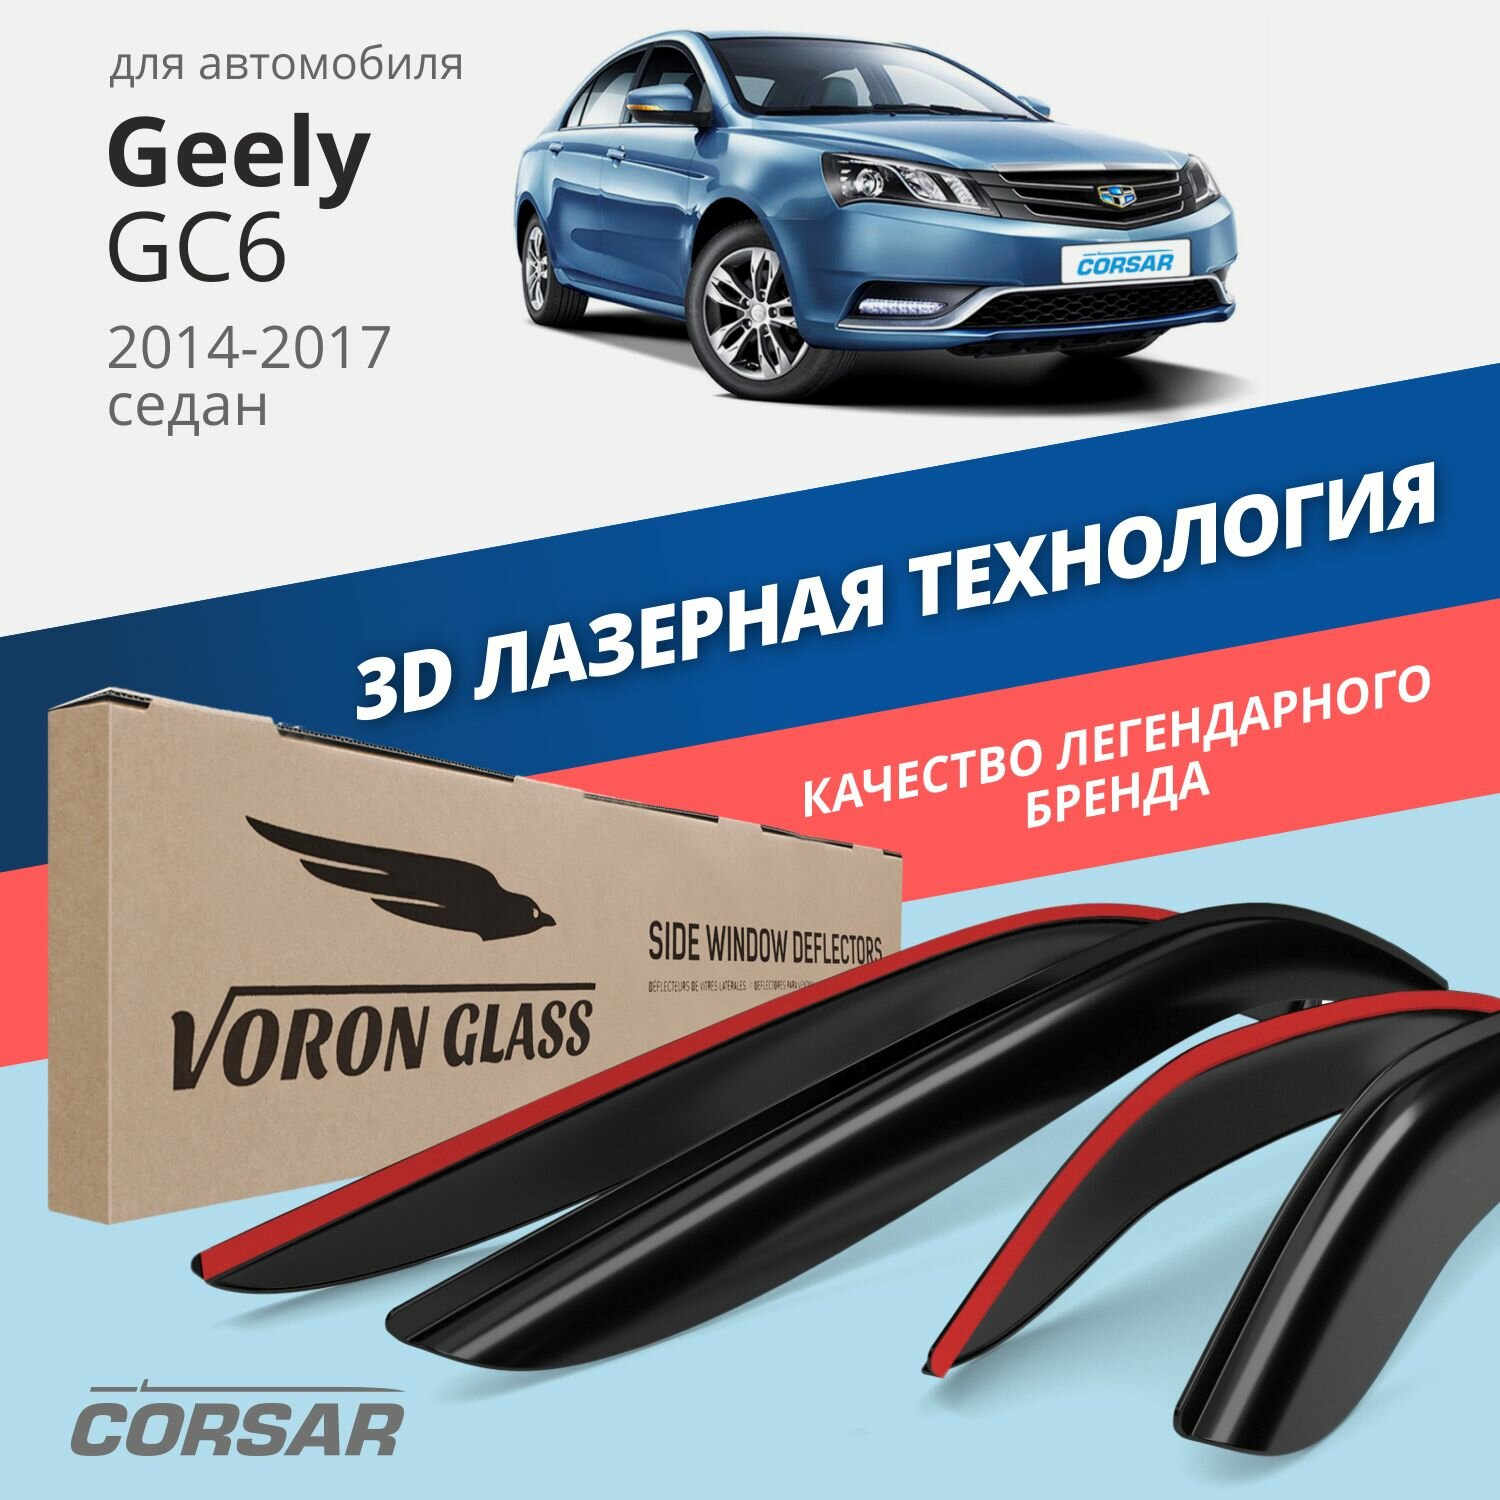 Дефлекторы окон Voron Glass серия Corsar для Geely GC6 2014-2016 седан накладные 4 шт.